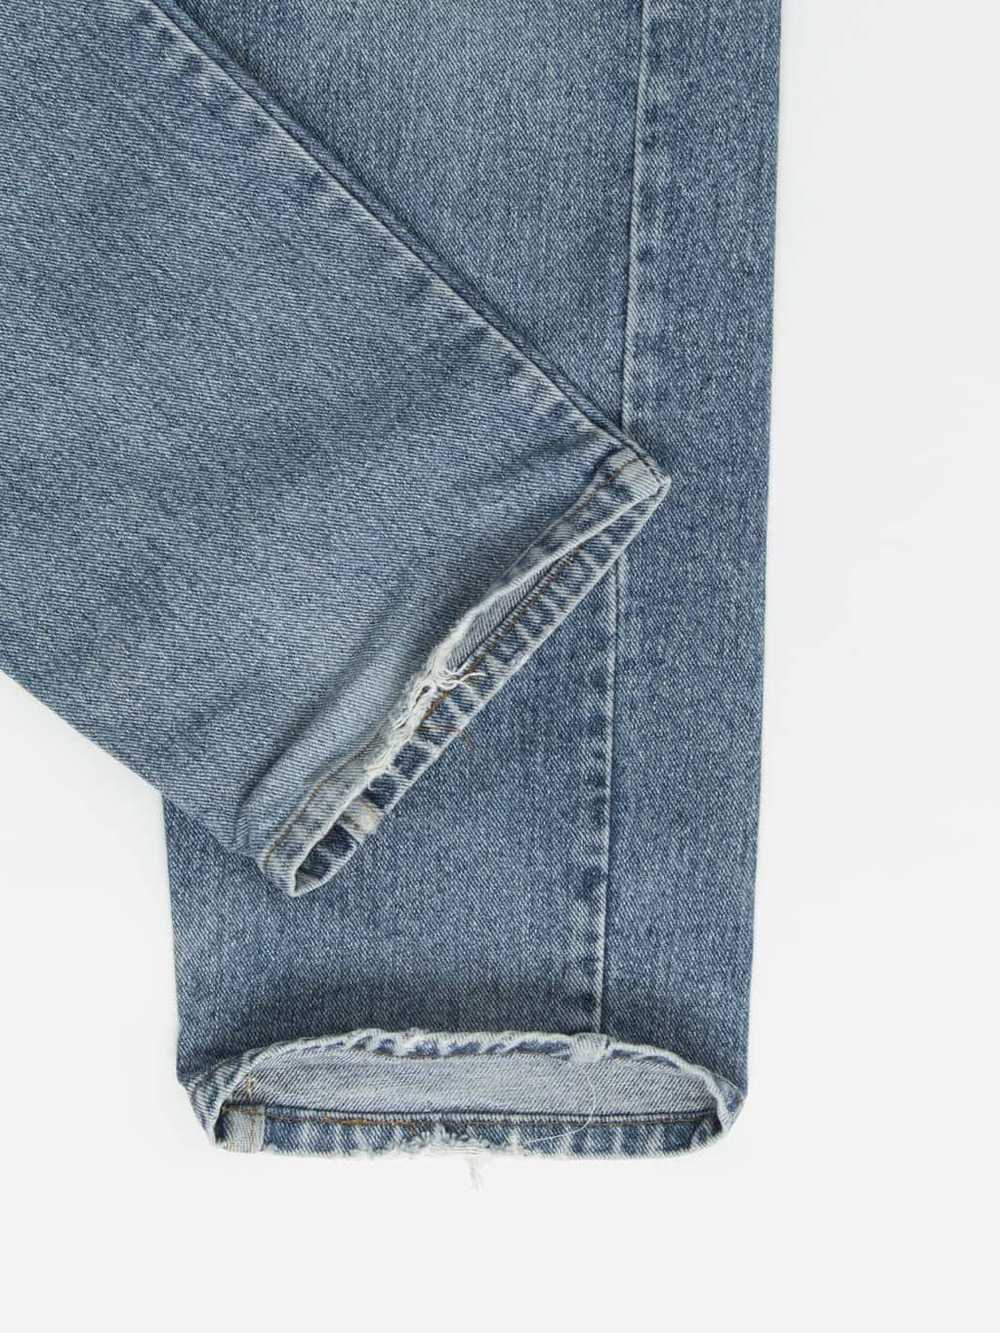 Vintage Levis 554 jeans 30 x 32 blue stonewash US… - image 5